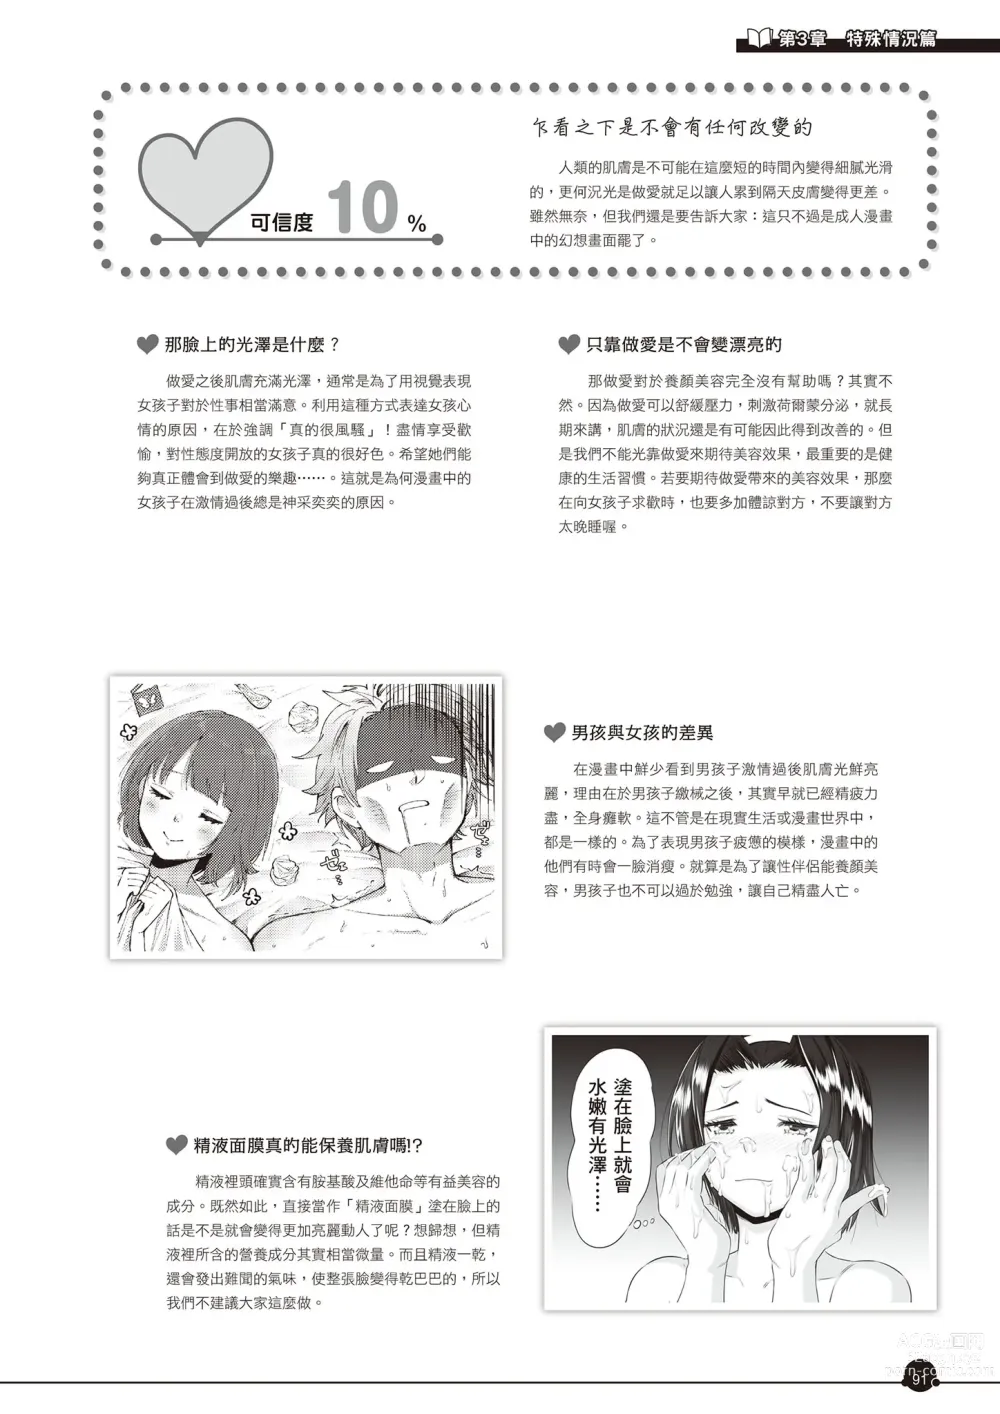 Page 92 of manga 完全實用版 成人漫畫沒告訴你的性愛真相